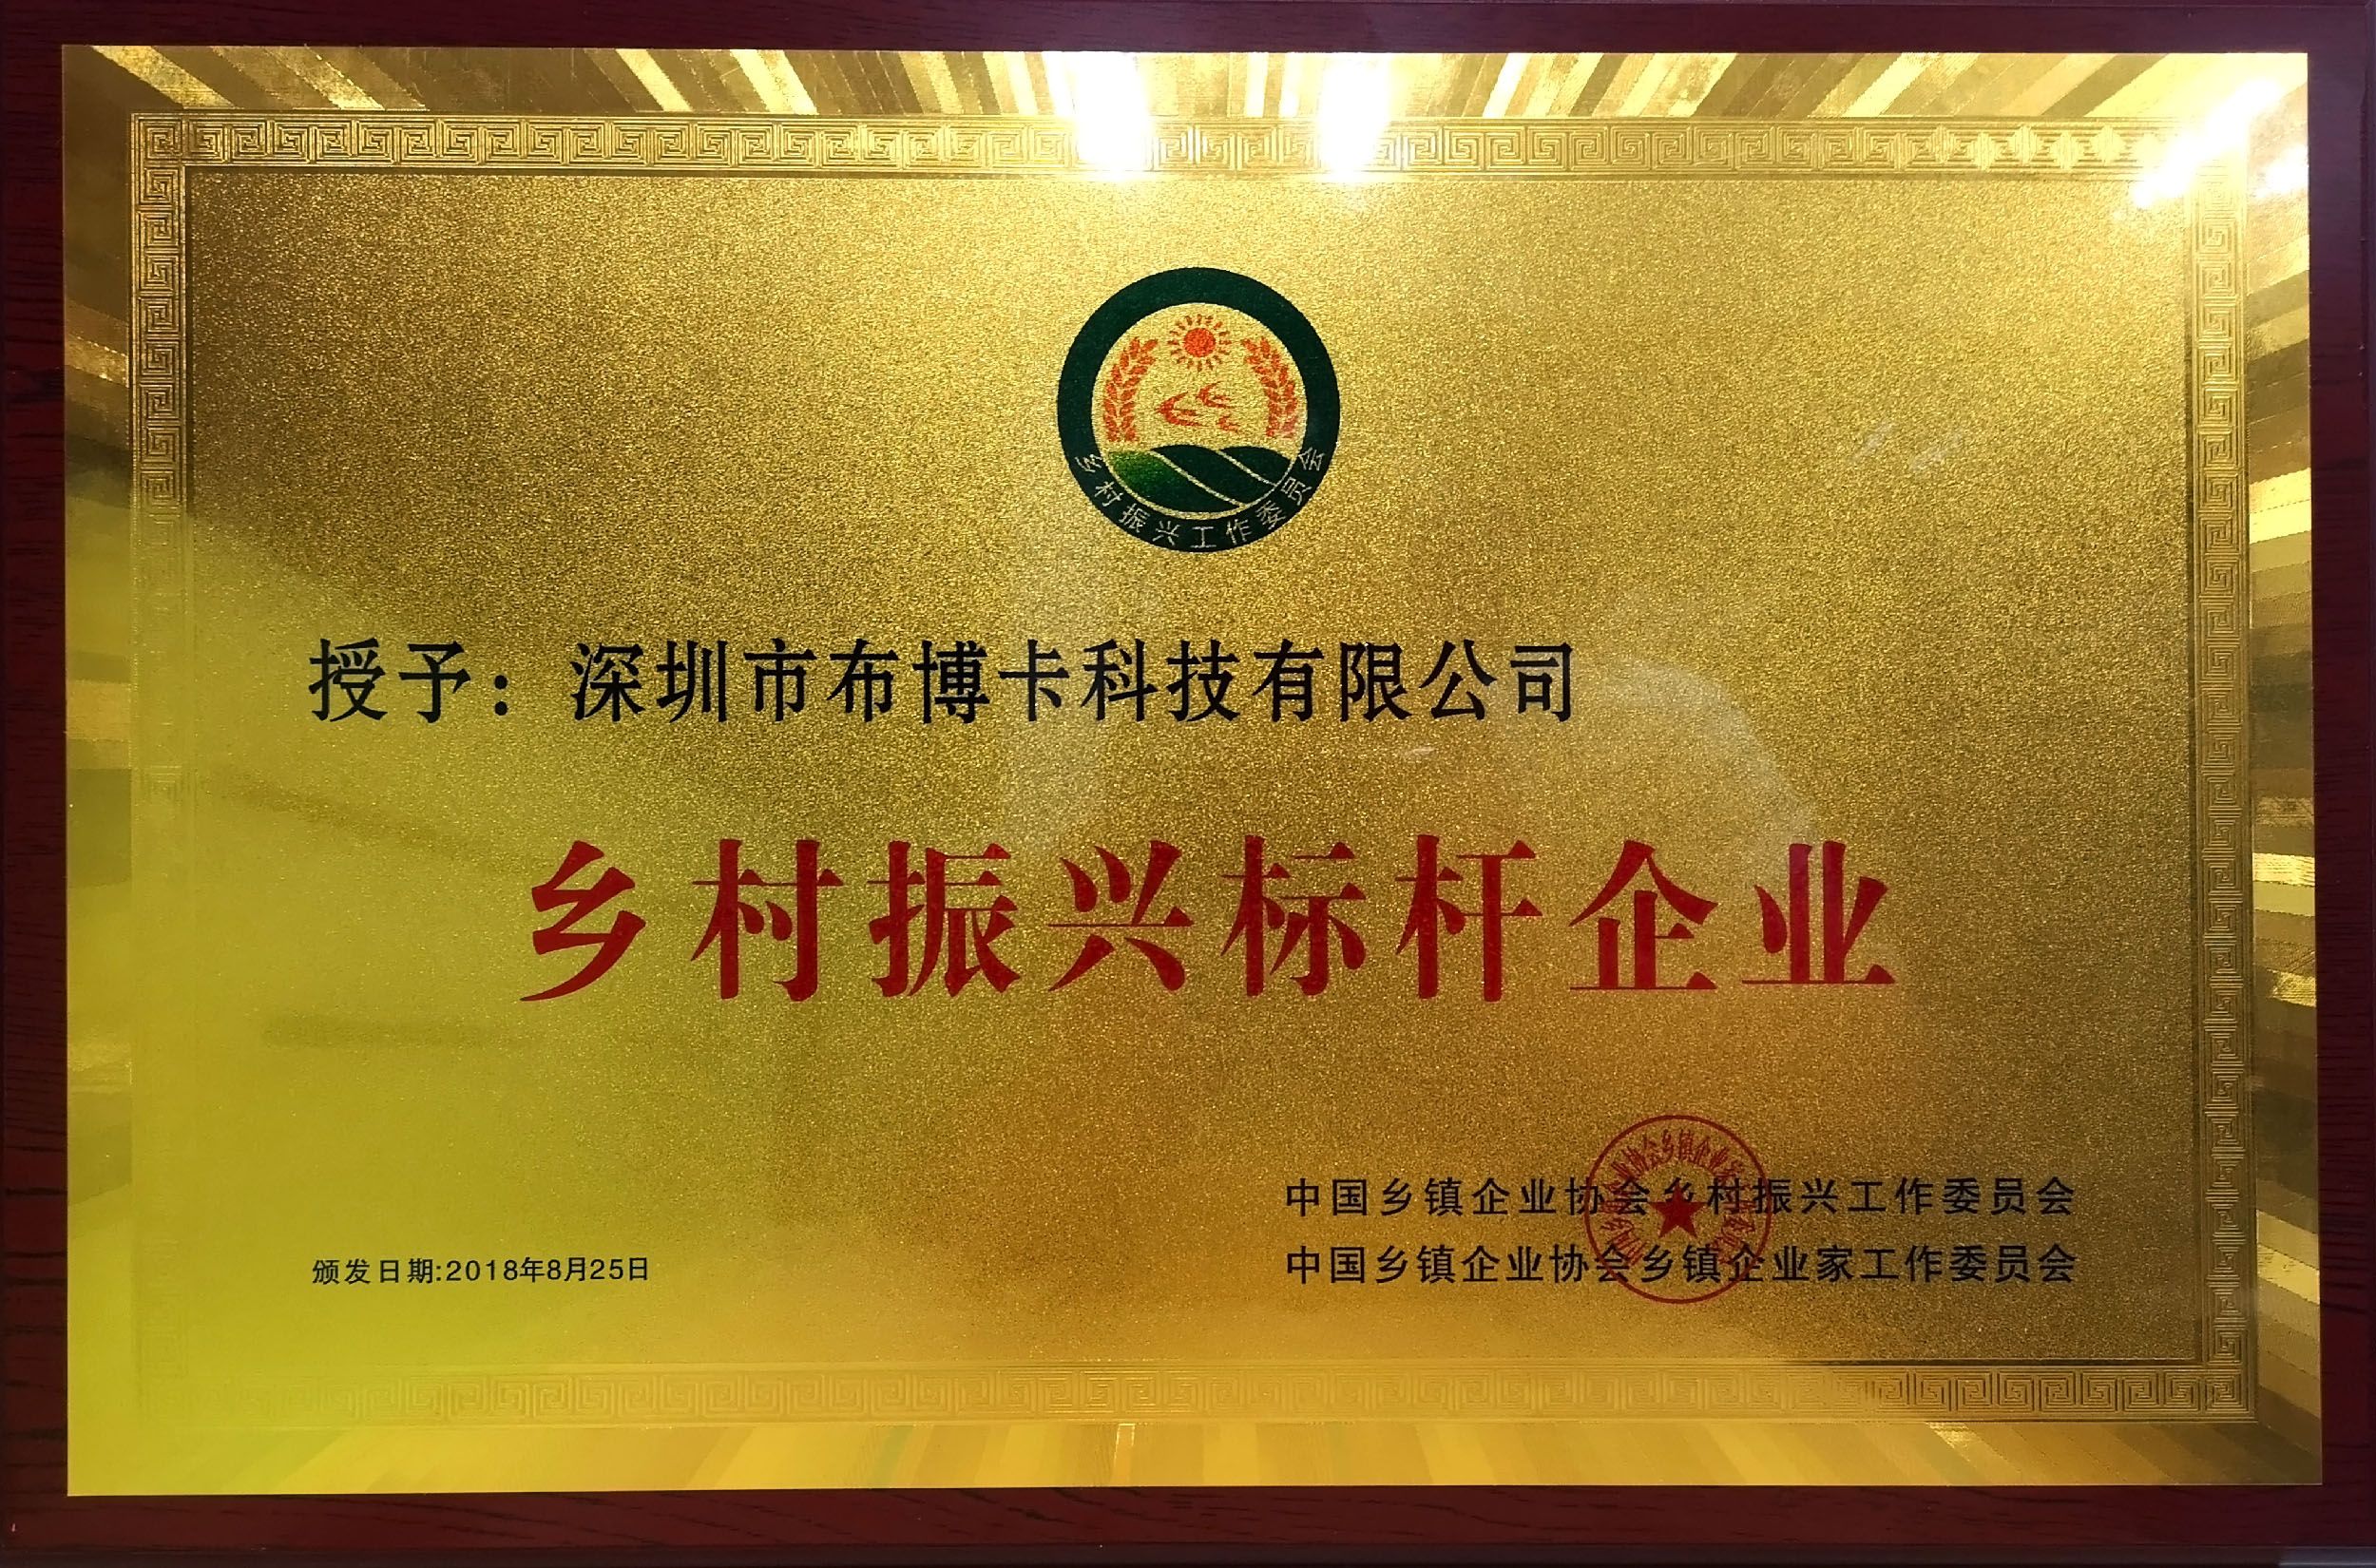 乡村振兴工作委员会向我公司颁发“乡村振兴标杆企业”证书